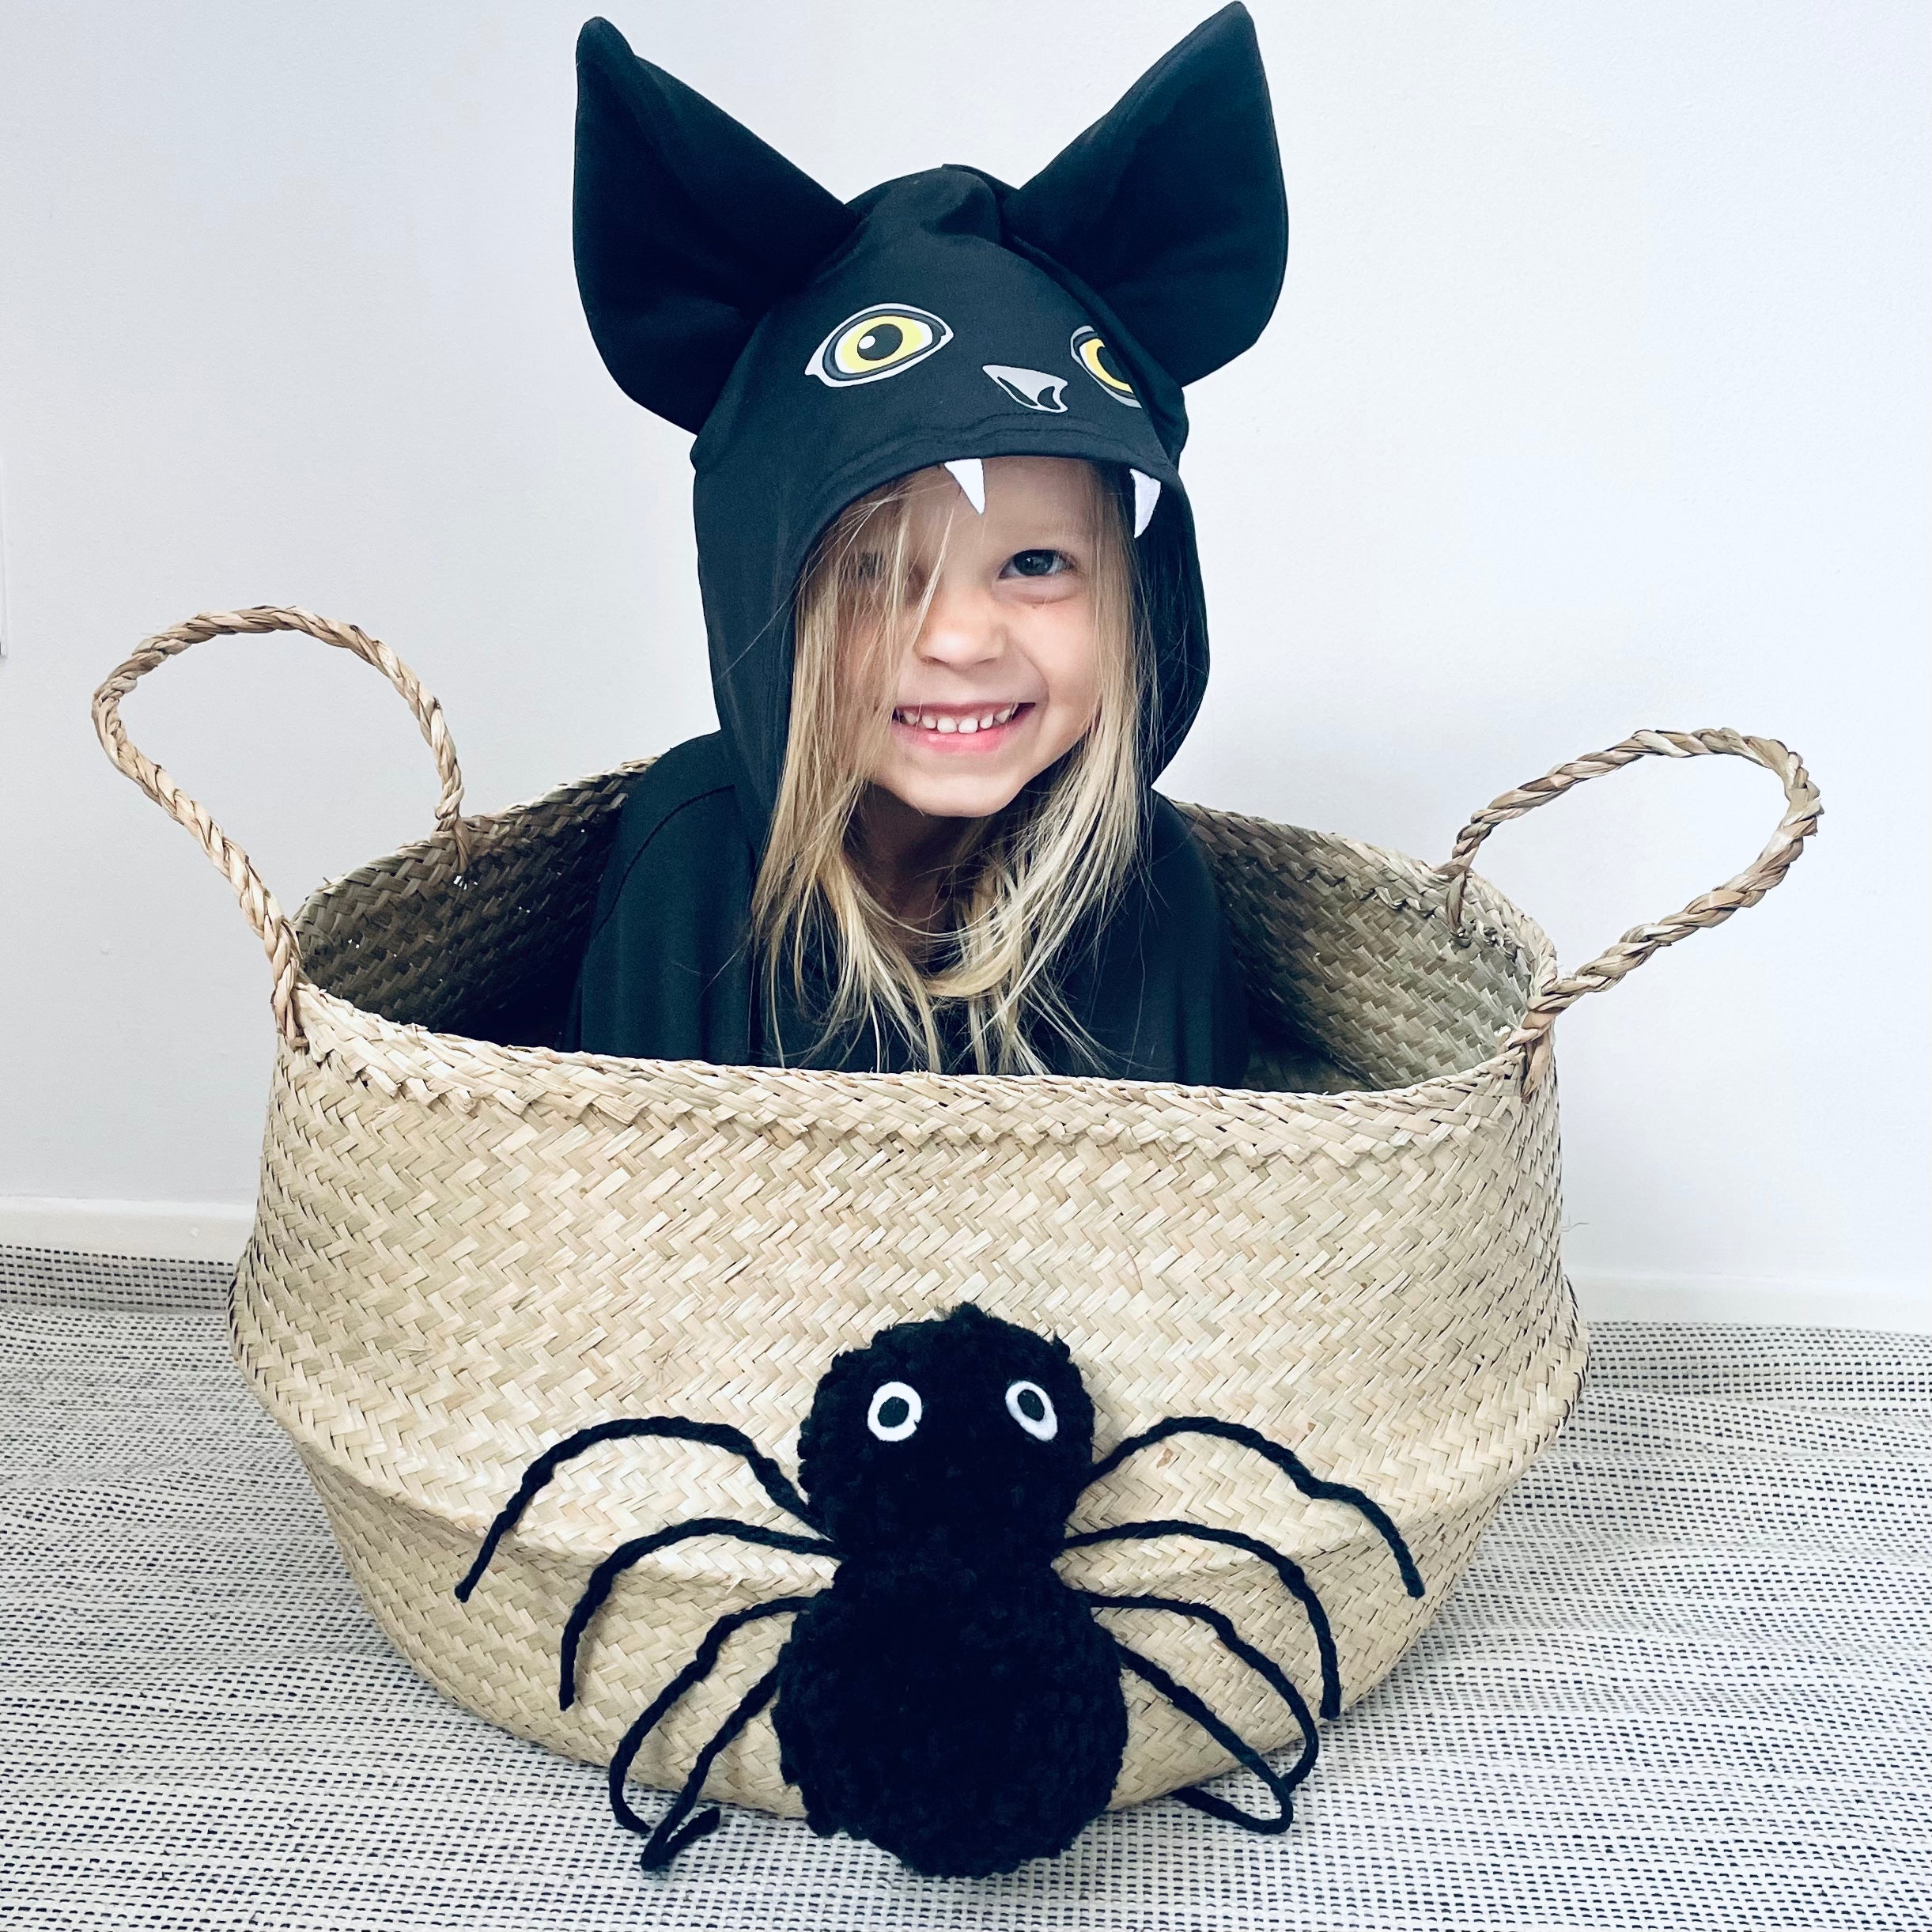 Spider basket - Extra Large